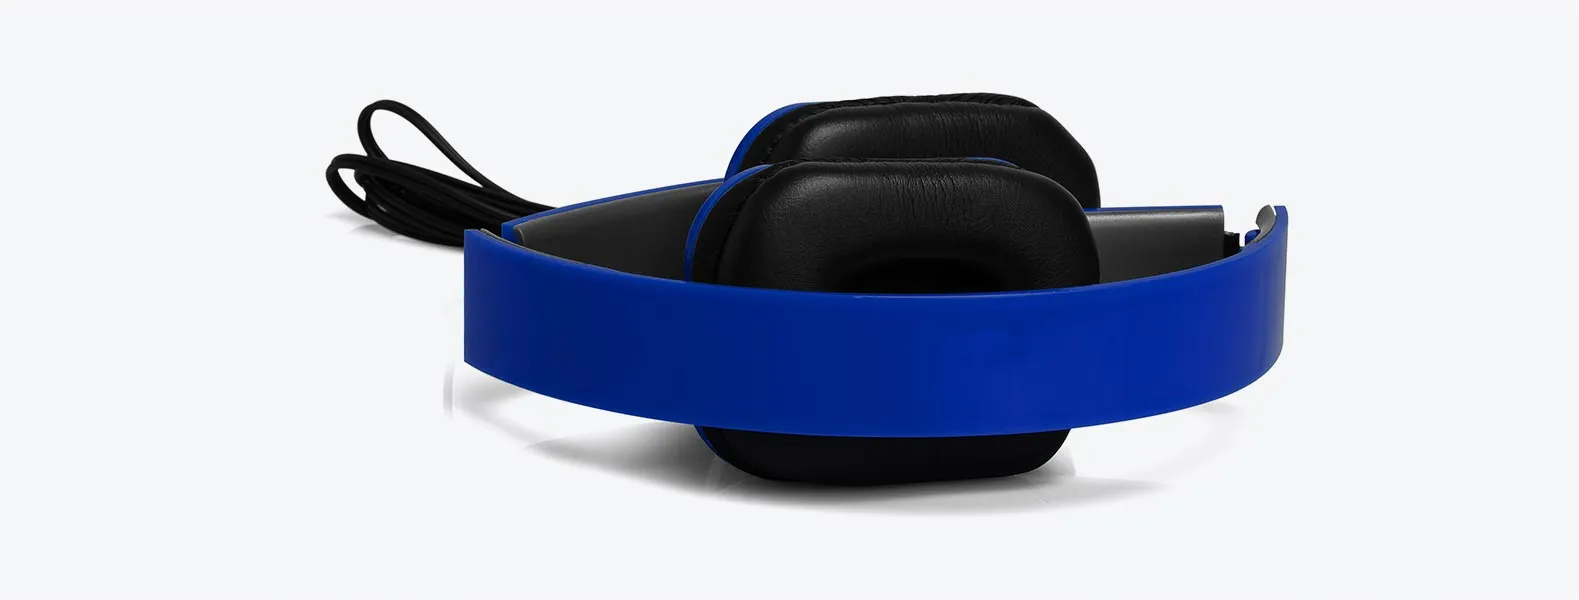 Fone de ouvido dobrável azul em ABS com ligação stereo de 3,5mm e cabo com 1,45m. Disponível nas cores branco, preto e azul.